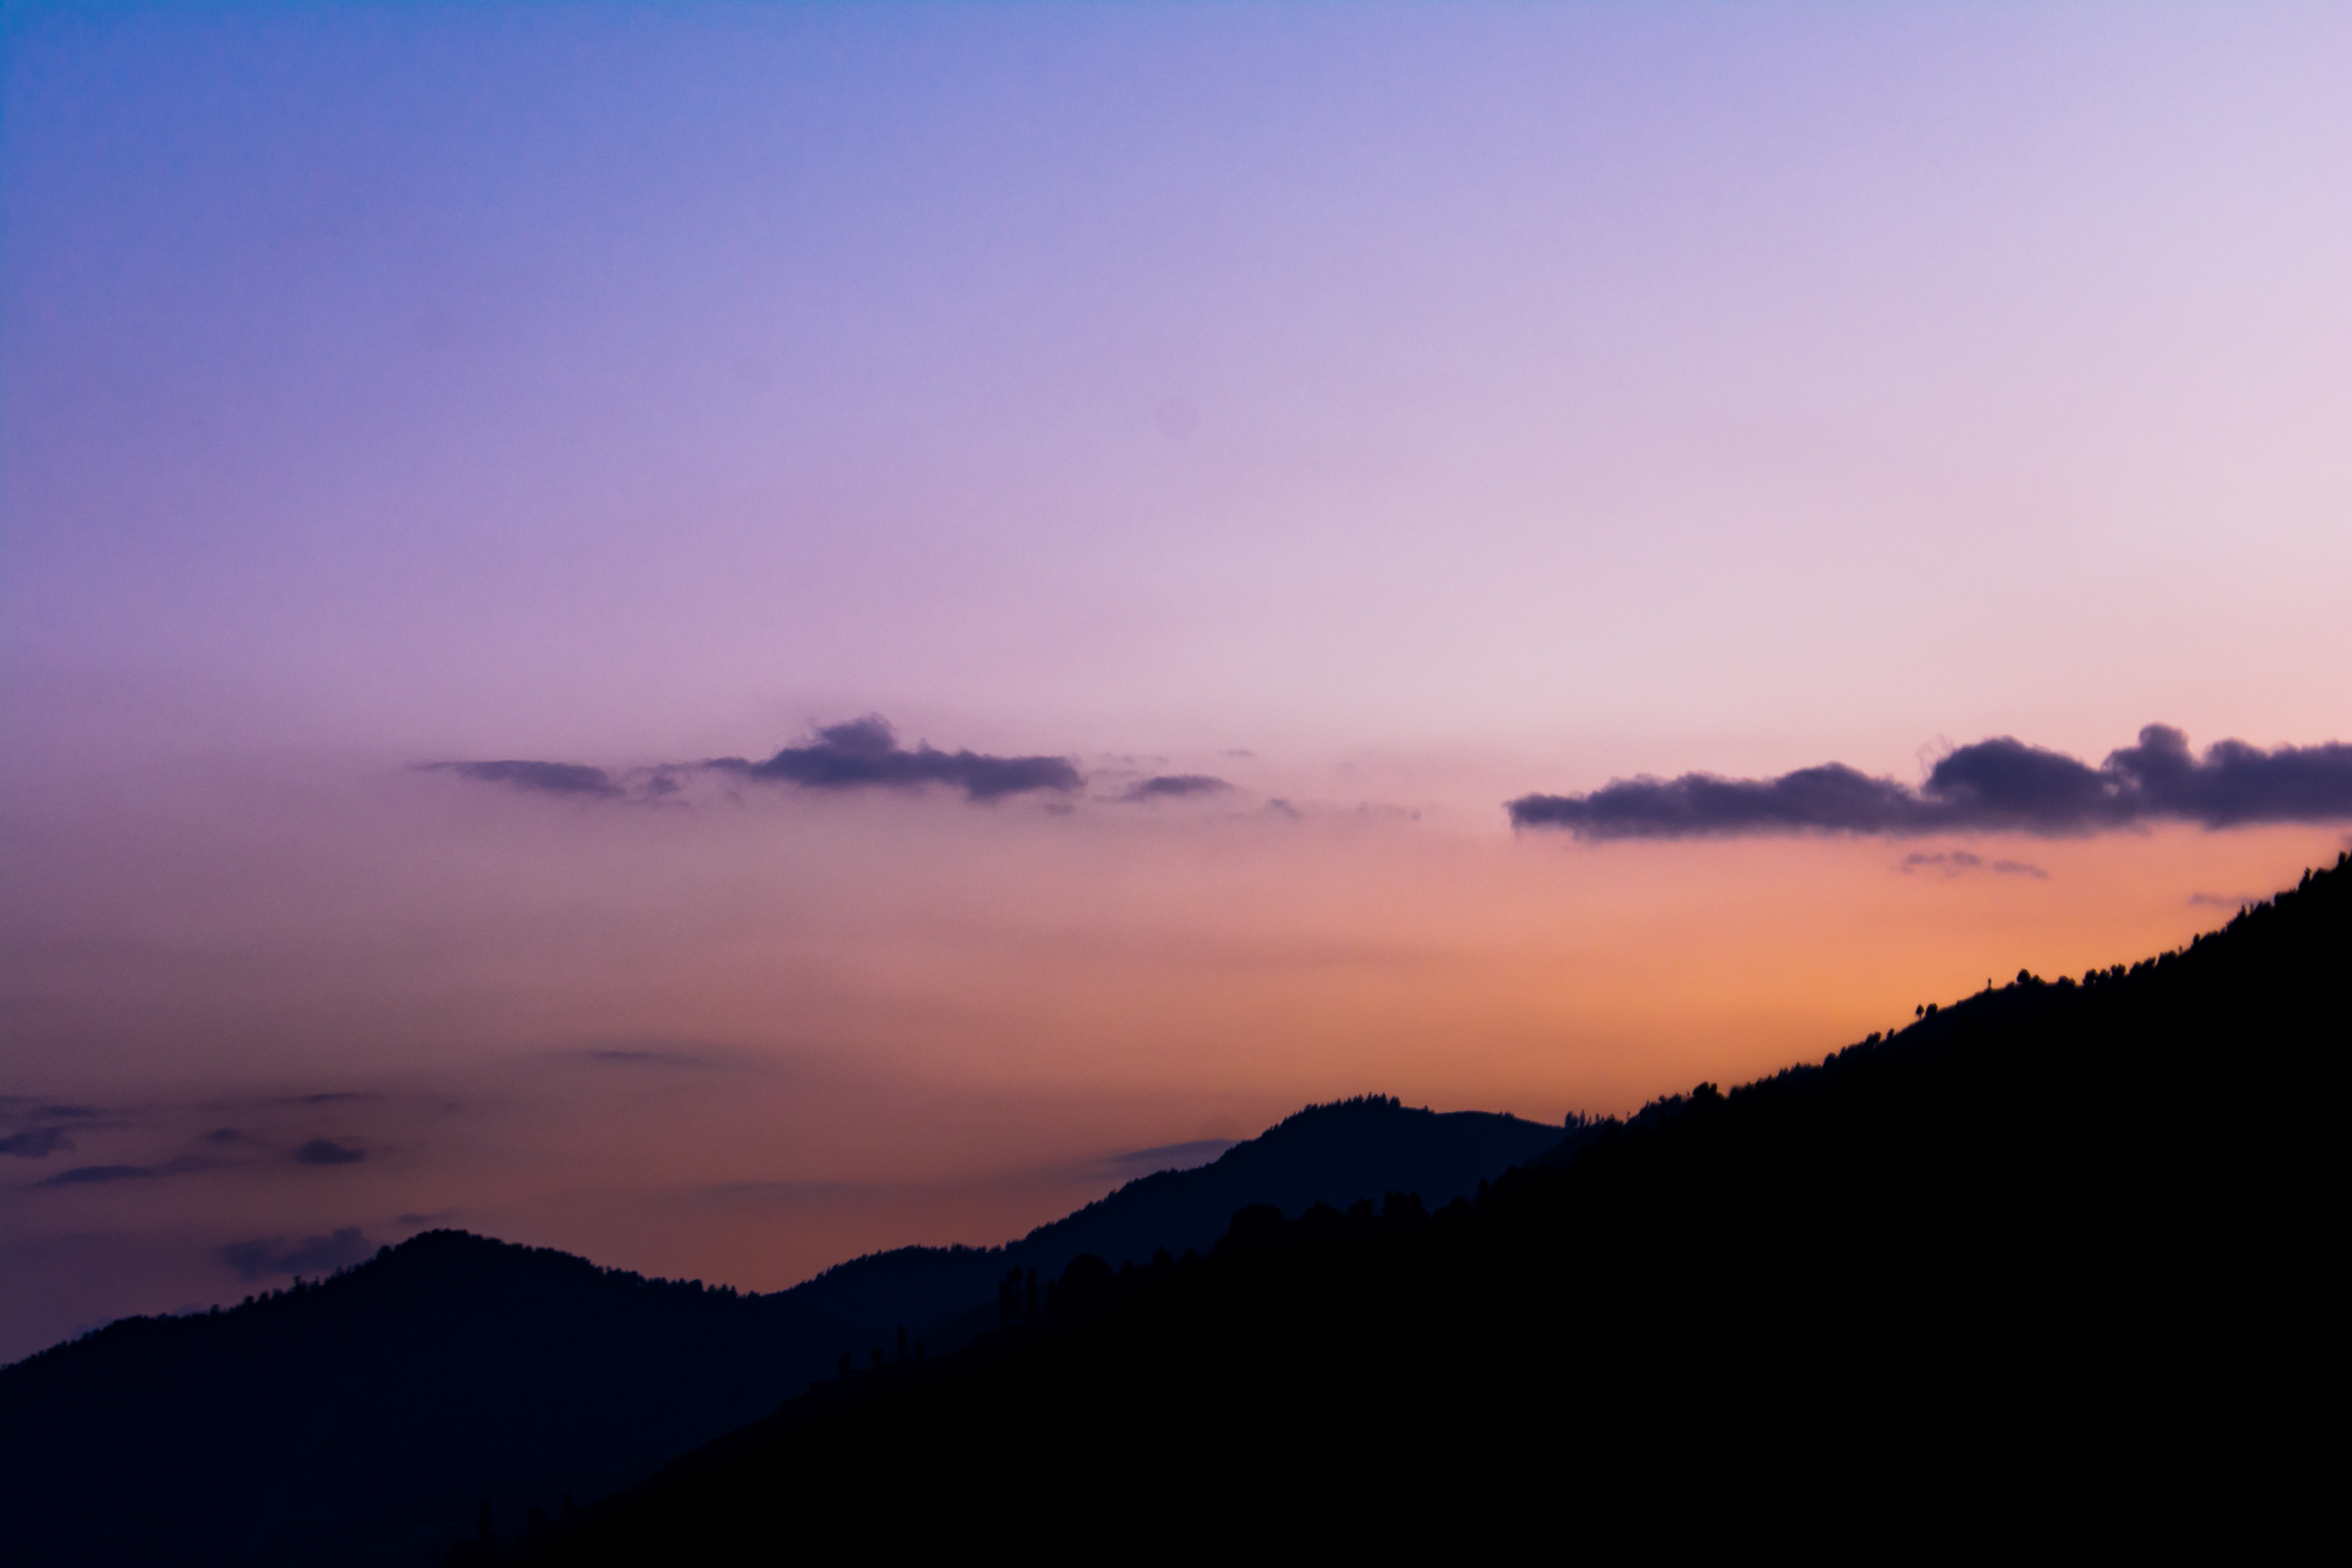 Sunset on Kumrat Valley, Pakistan. Photo by Abdul Rafay Shaikh on Unsplash